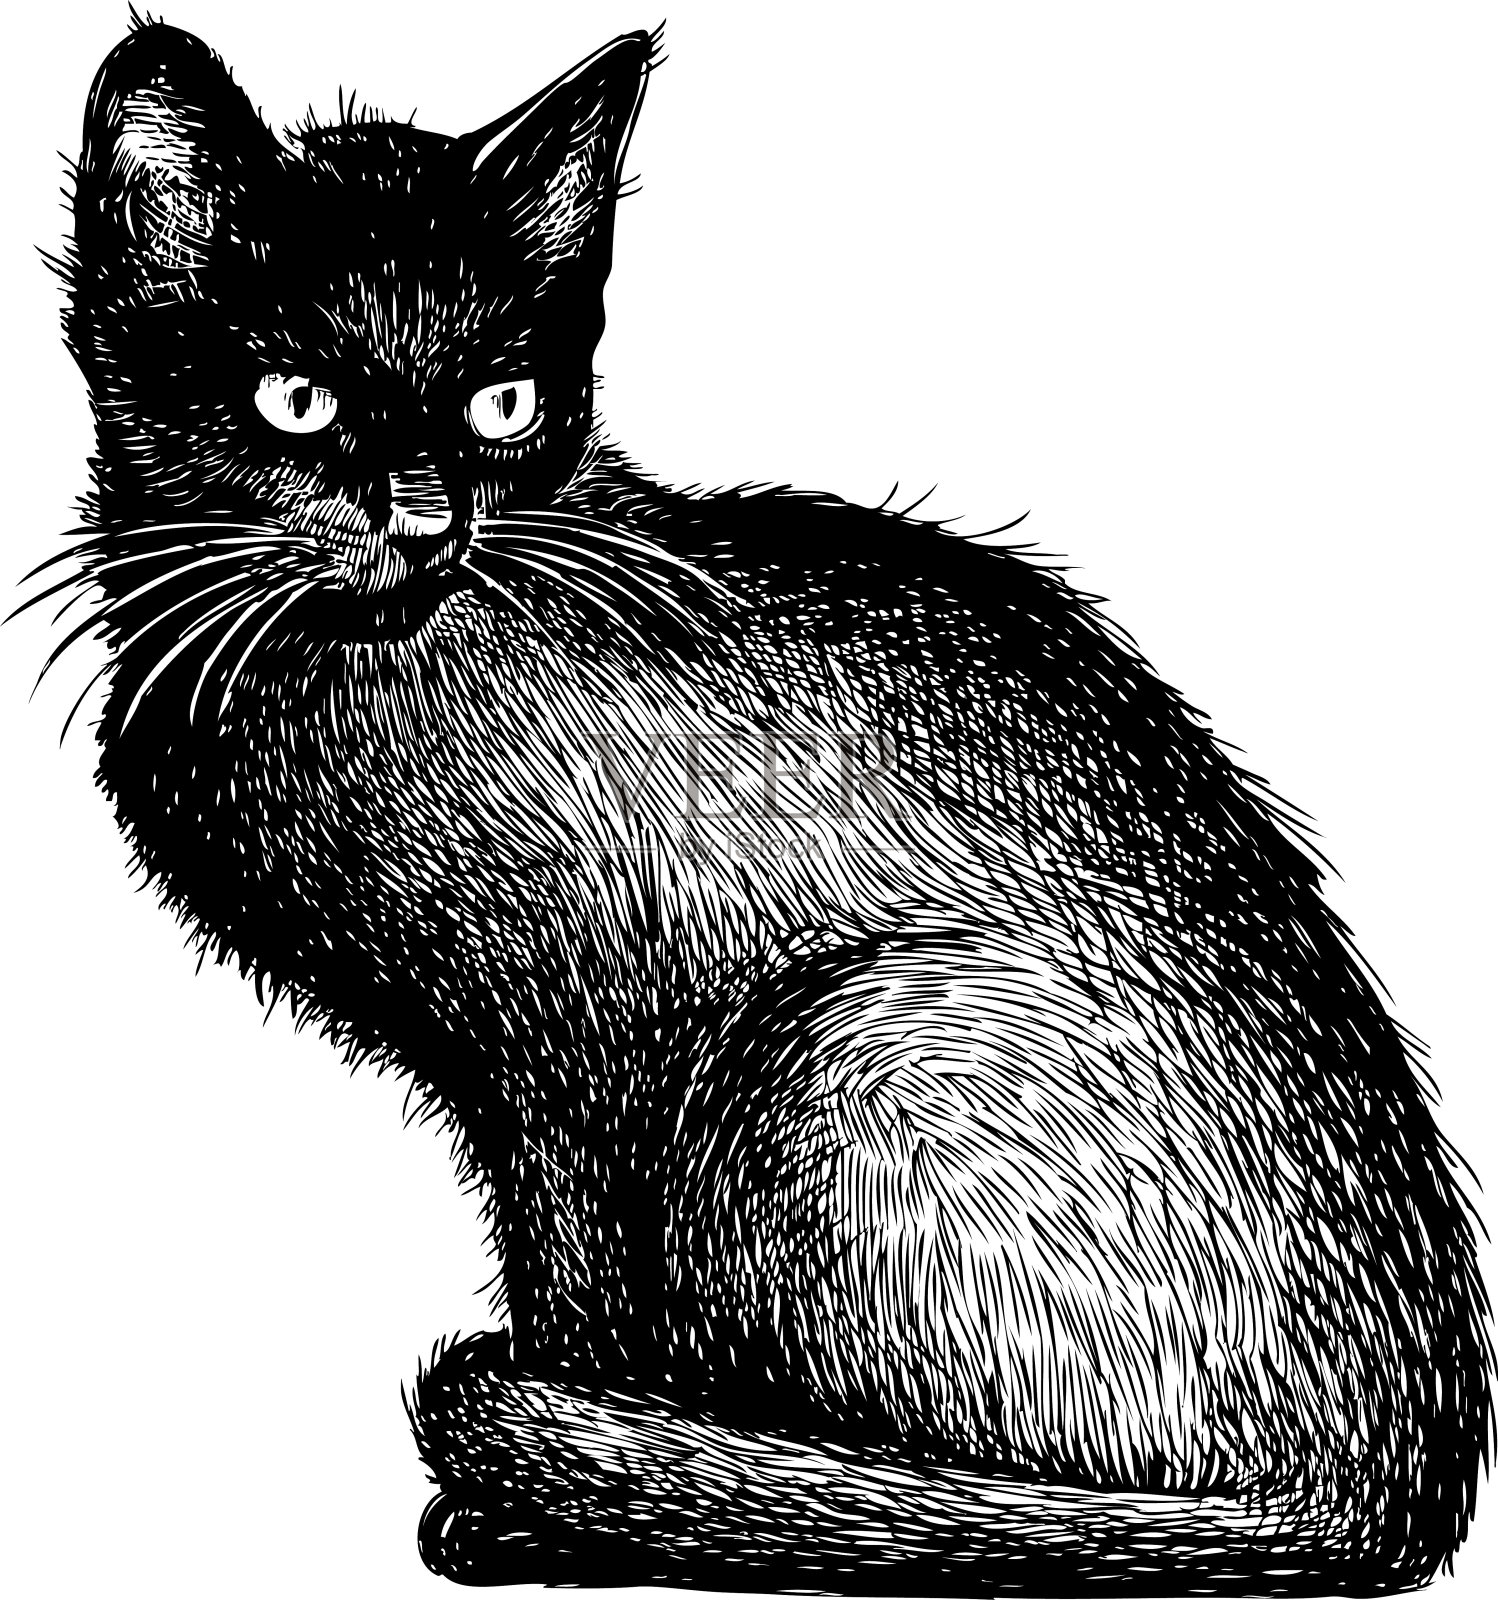 一只黑猫的素描插画图片素材